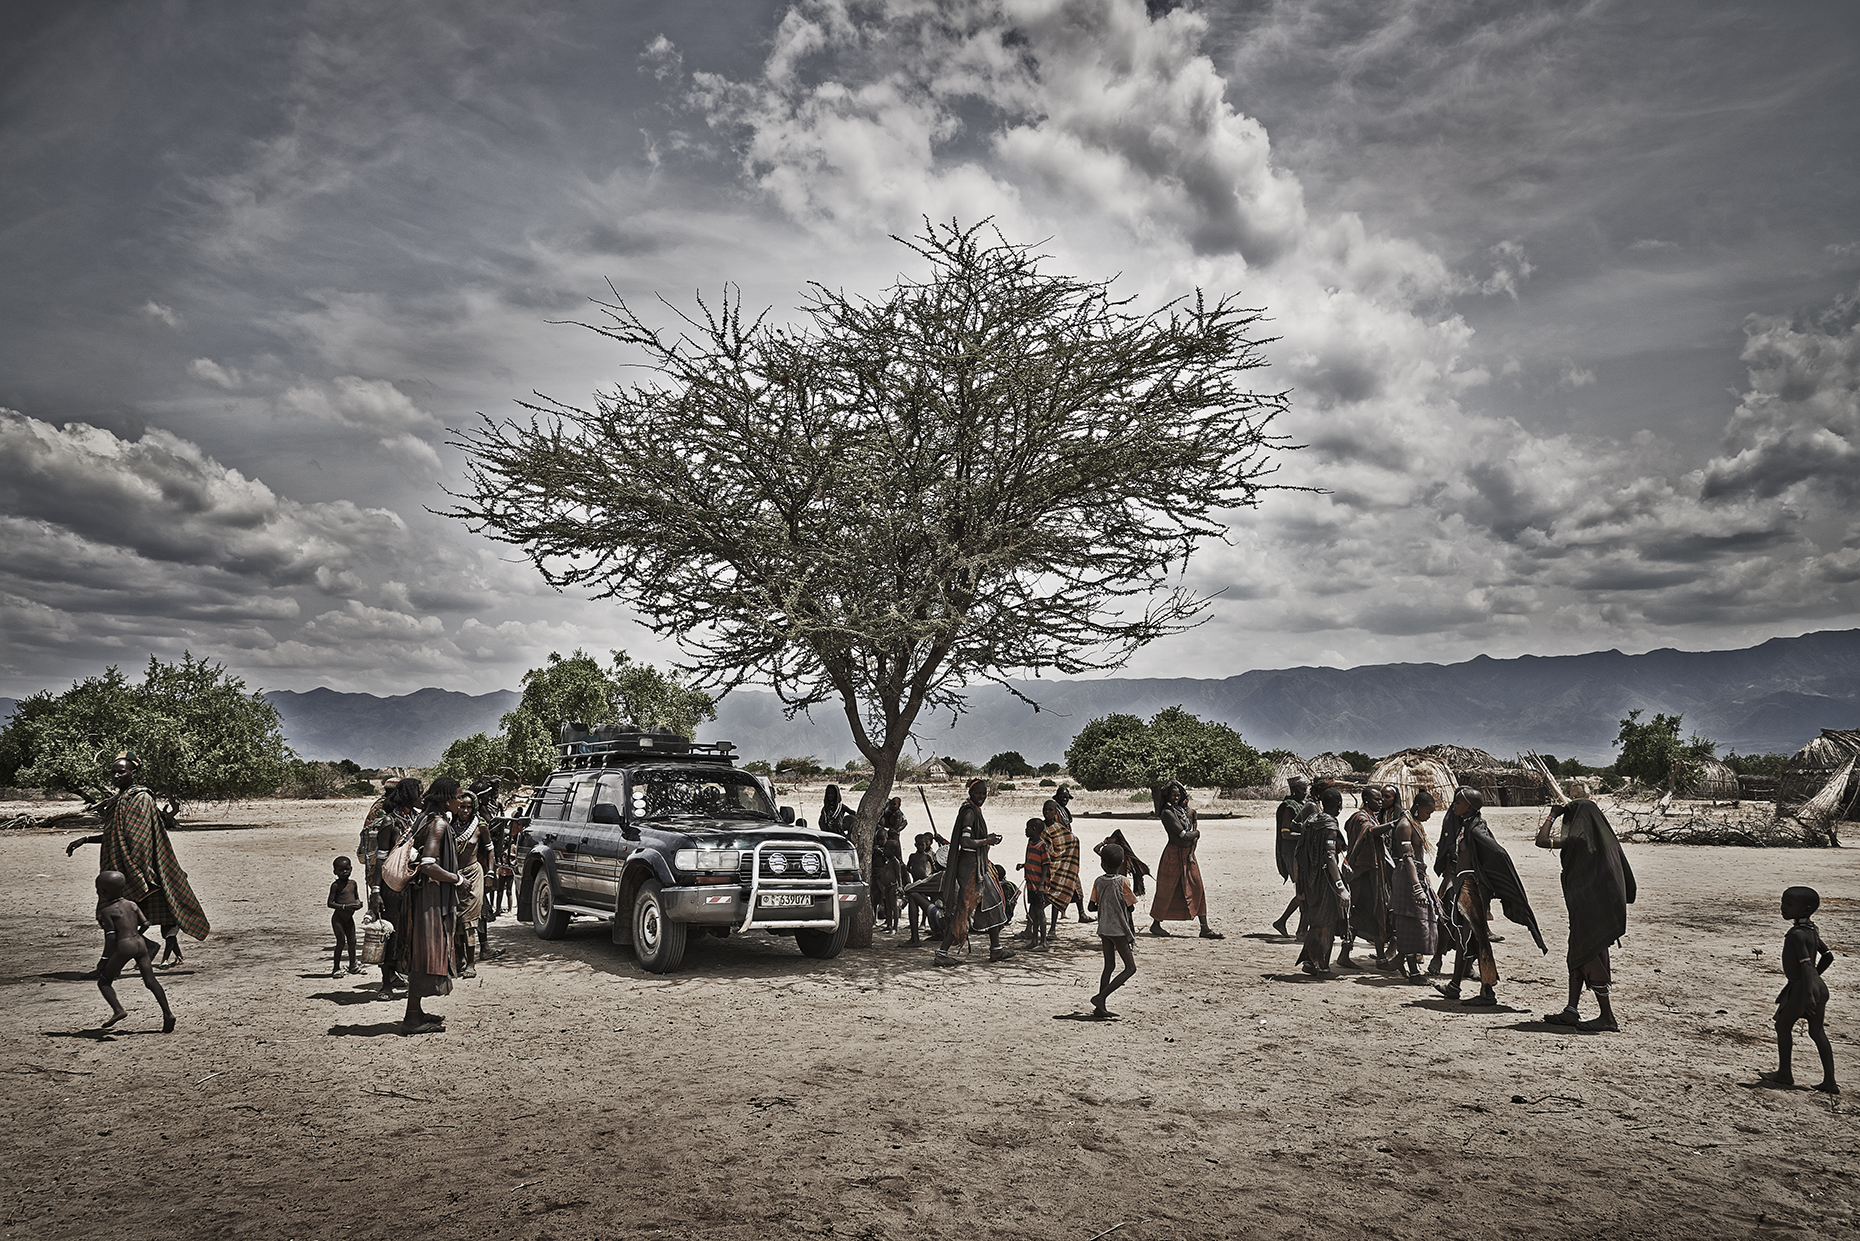 ETHIOPIA - Arriving at Abore Village